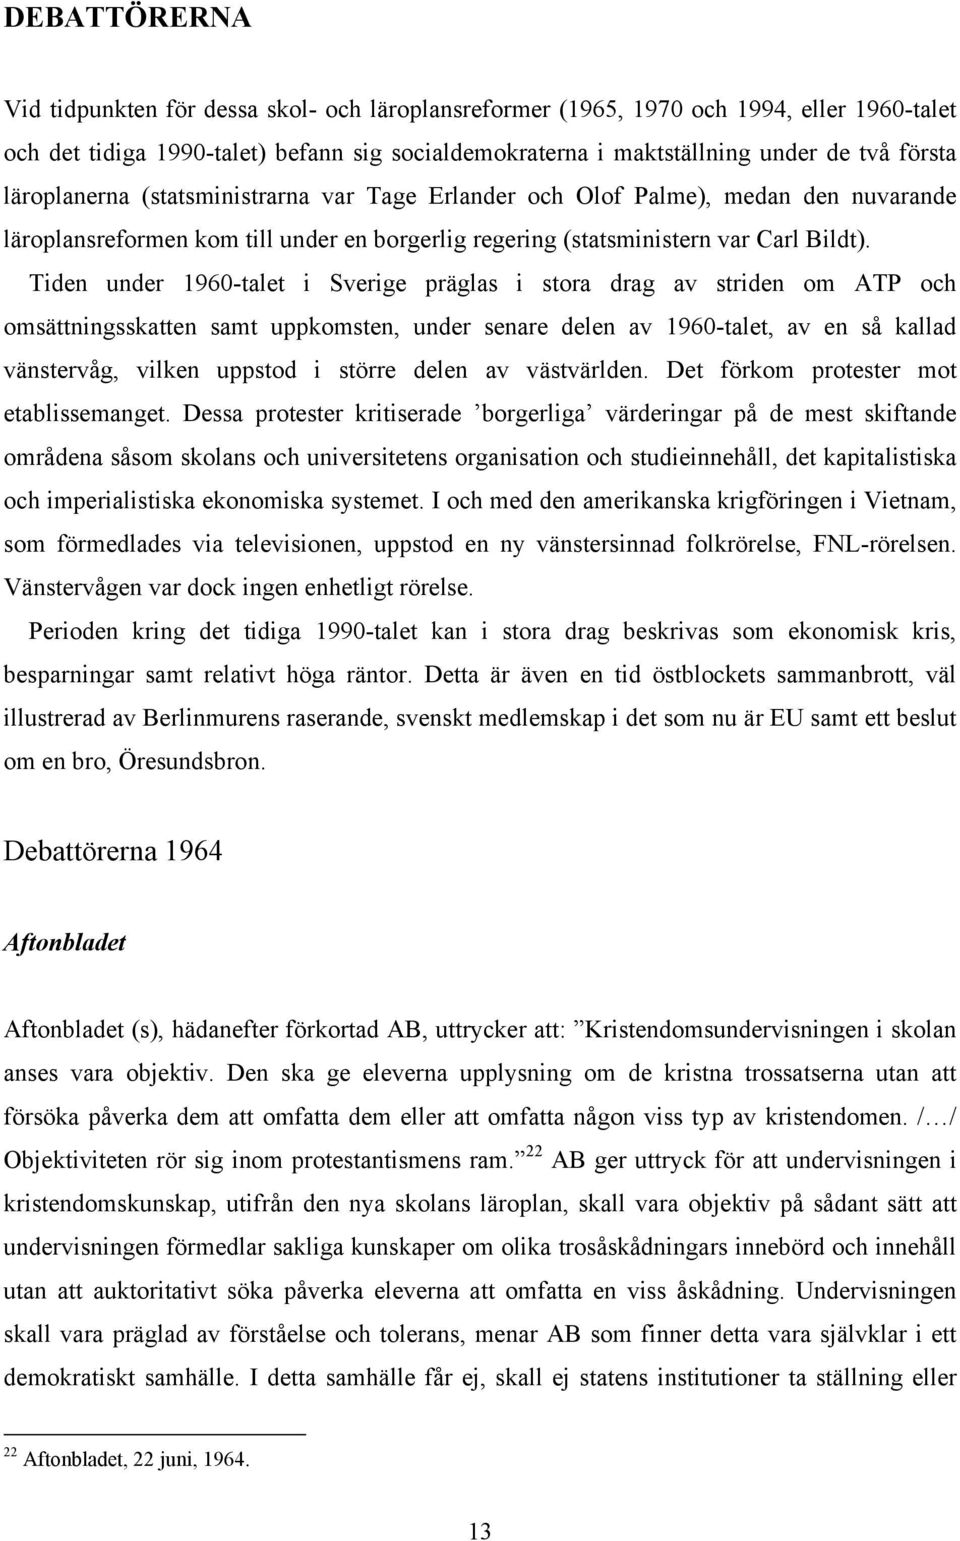 Tiden under 1960-talet i Sverige präglas i stora drag av striden om ATP och omsättningsskatten samt uppkomsten, under senare delen av 1960-talet, av en så kallad vänstervåg, vilken uppstod i större